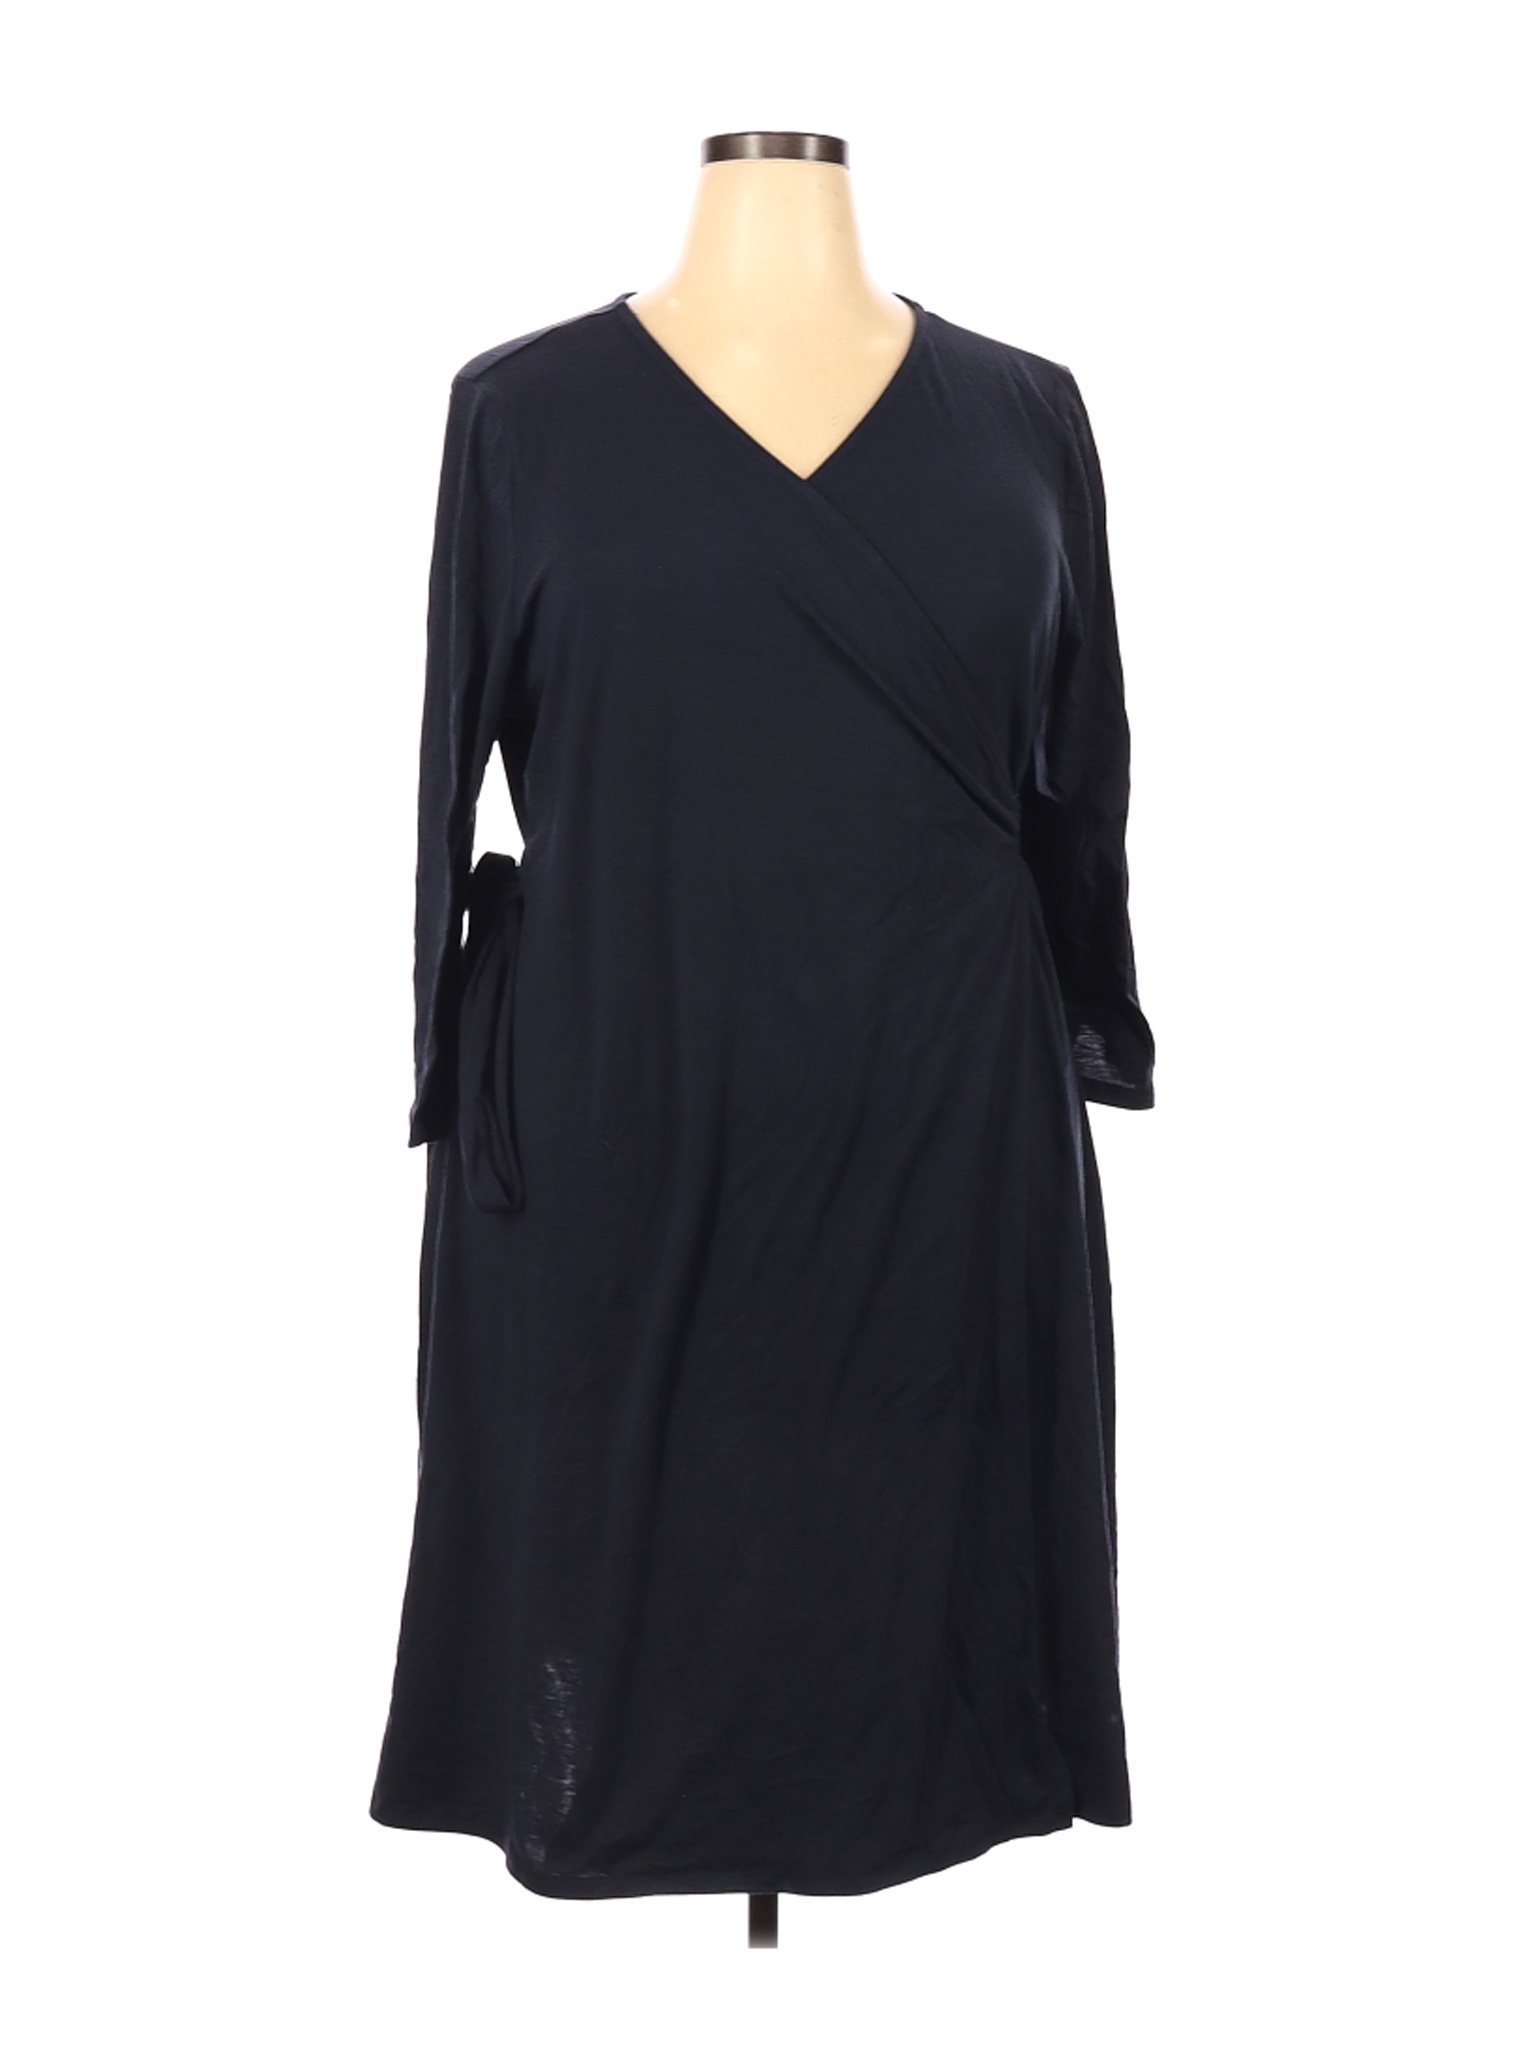 Lularoe Women Black Casual Dress 3X Plus | eBay